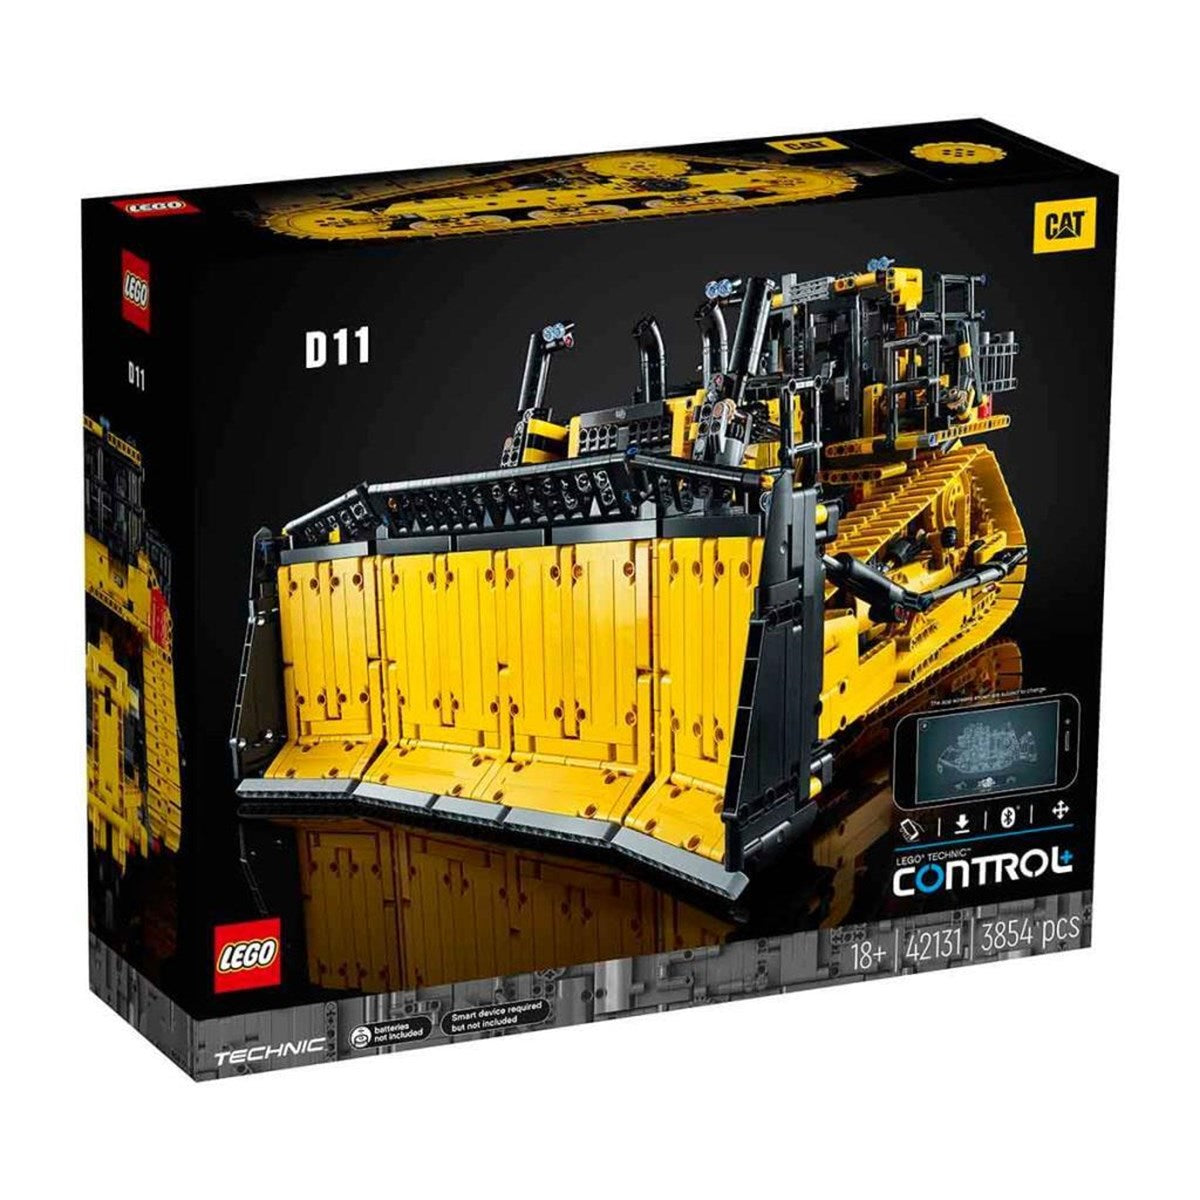 Lego Technic Uygulama Kumandalı Cat D11 Buldozer 42131 | Toysall